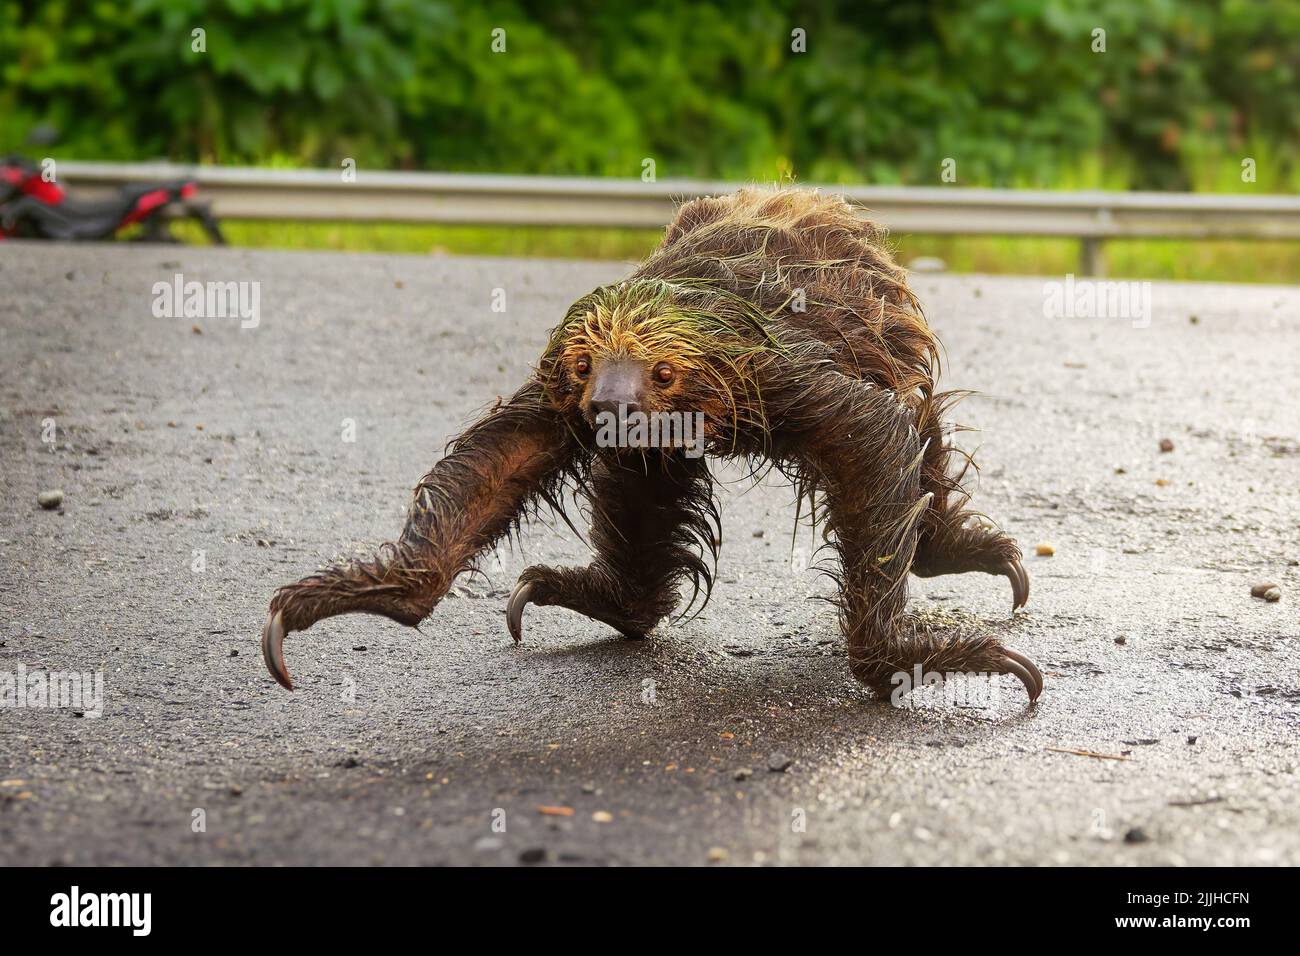 Linné-Zweizehen-Faultier (Choloepus didactylus) überquert Straße. Süßes nasses Faultier, das versucht, über eine schmutzige Straße in Ecuador, Amazonien, zu kommen. Grüner Hintergrund. Stockfoto